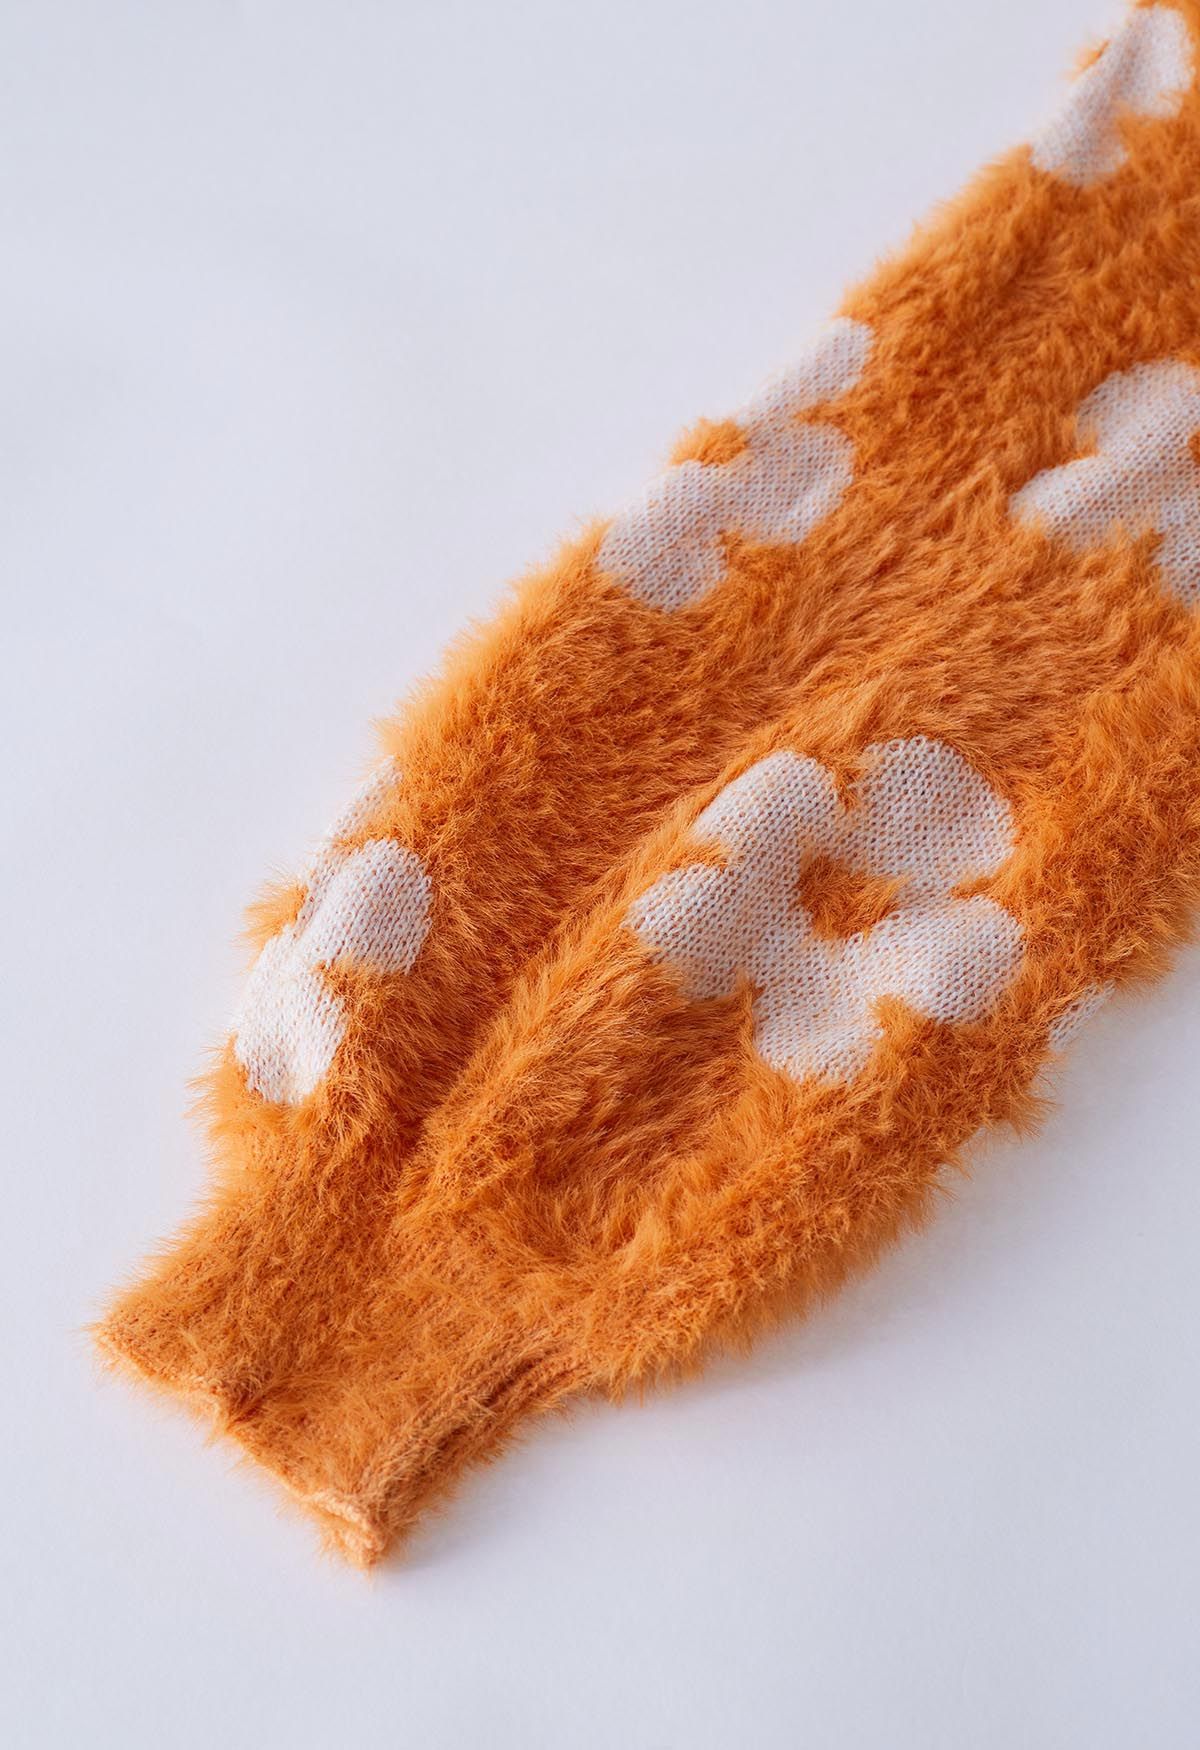 Cuteness Flowers Fuzzy Knit Cardigan in Orange